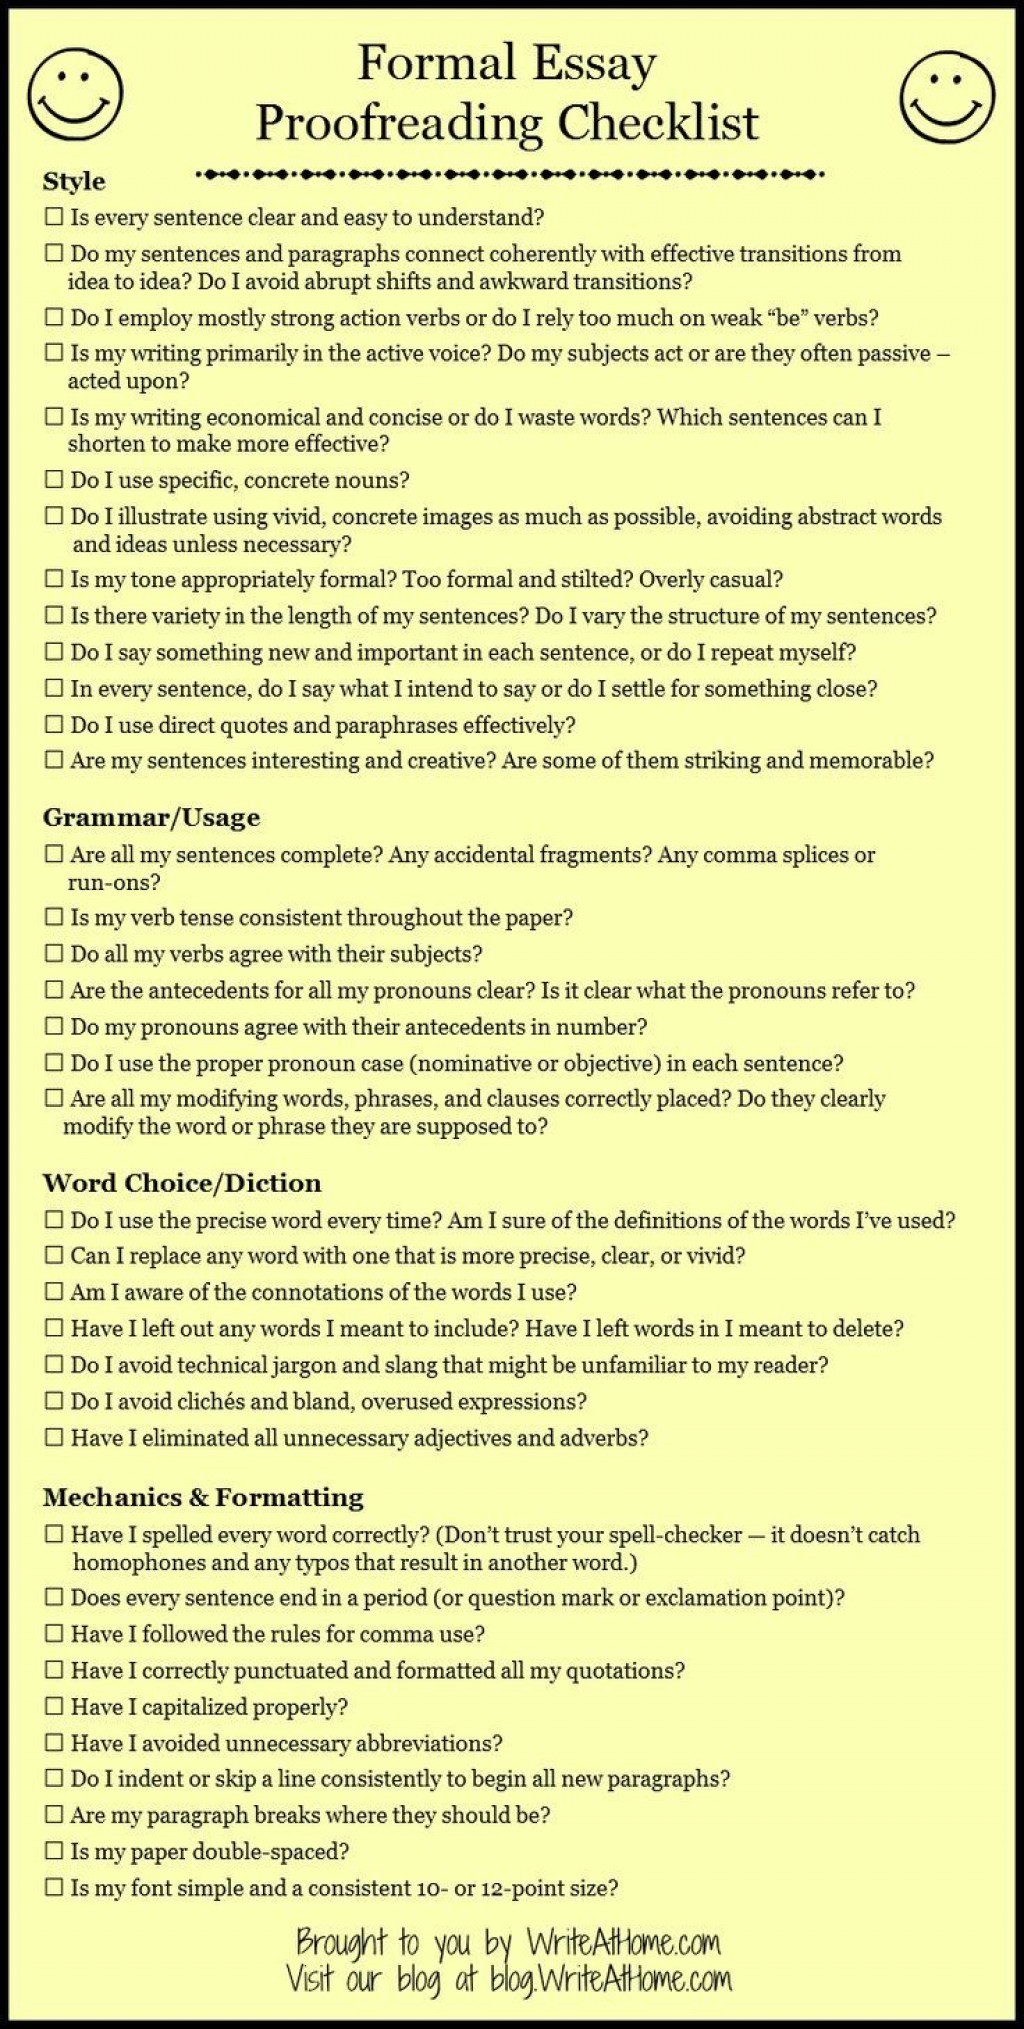 Essay Proofreading Checklist